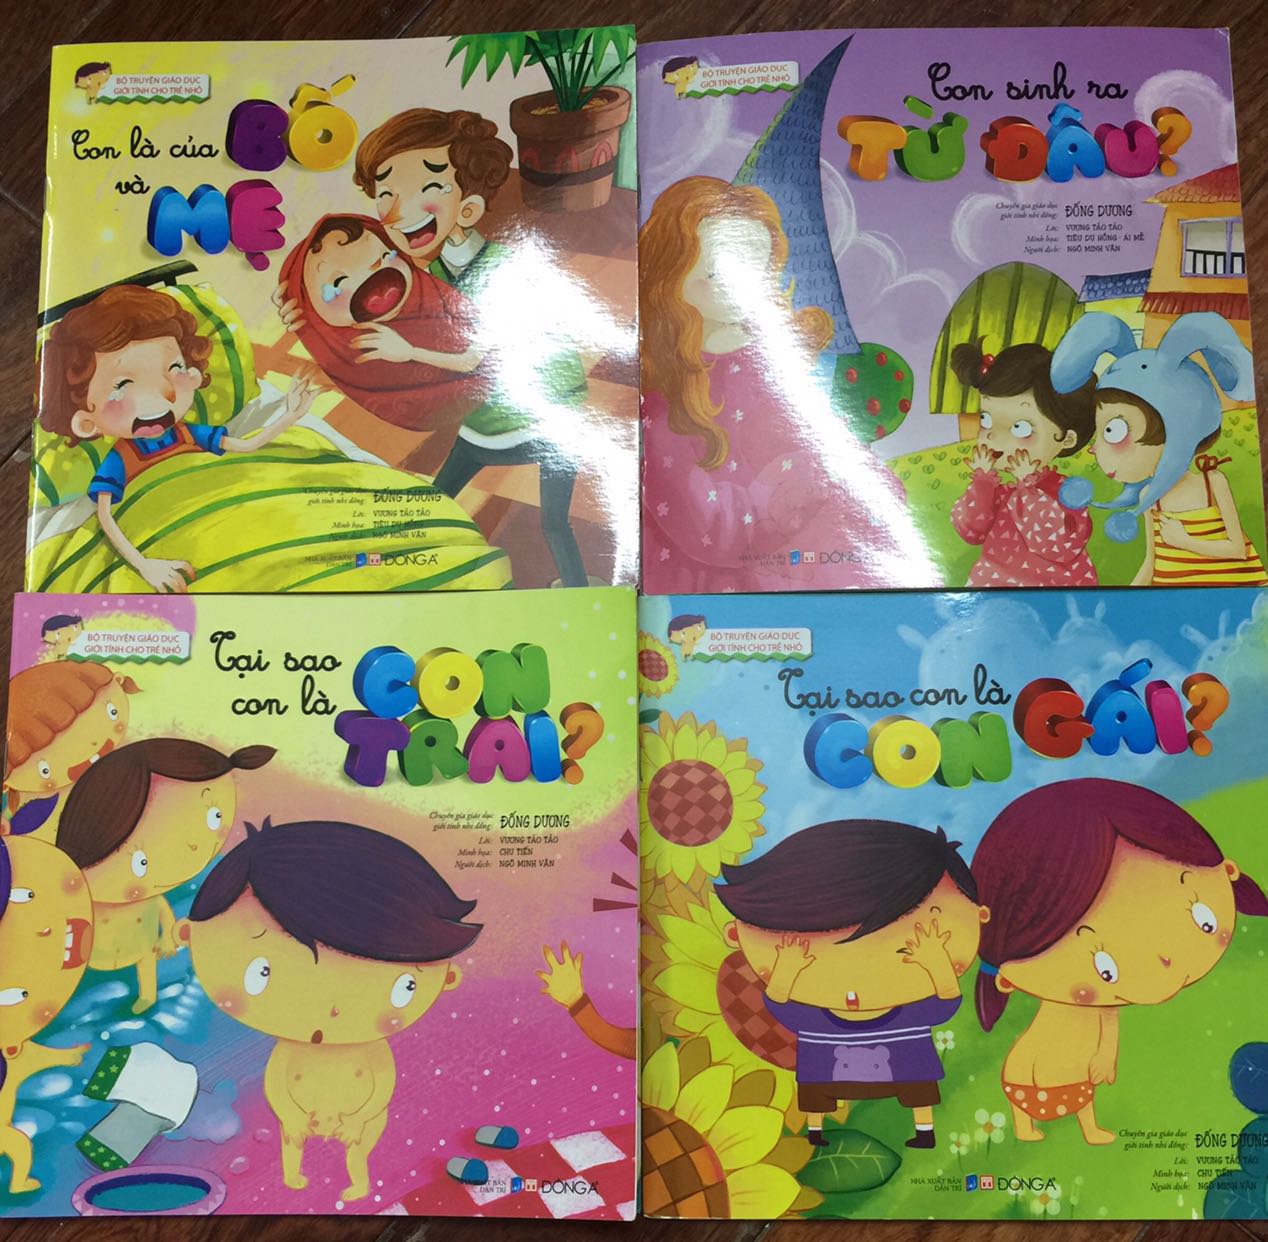 Bỏ túi 3 bộ sách giúp cha mẹ giáo dục giới tính cho con nhẹ nhàng, dễ hiểu ngay từ nhỏ - Ảnh 1.